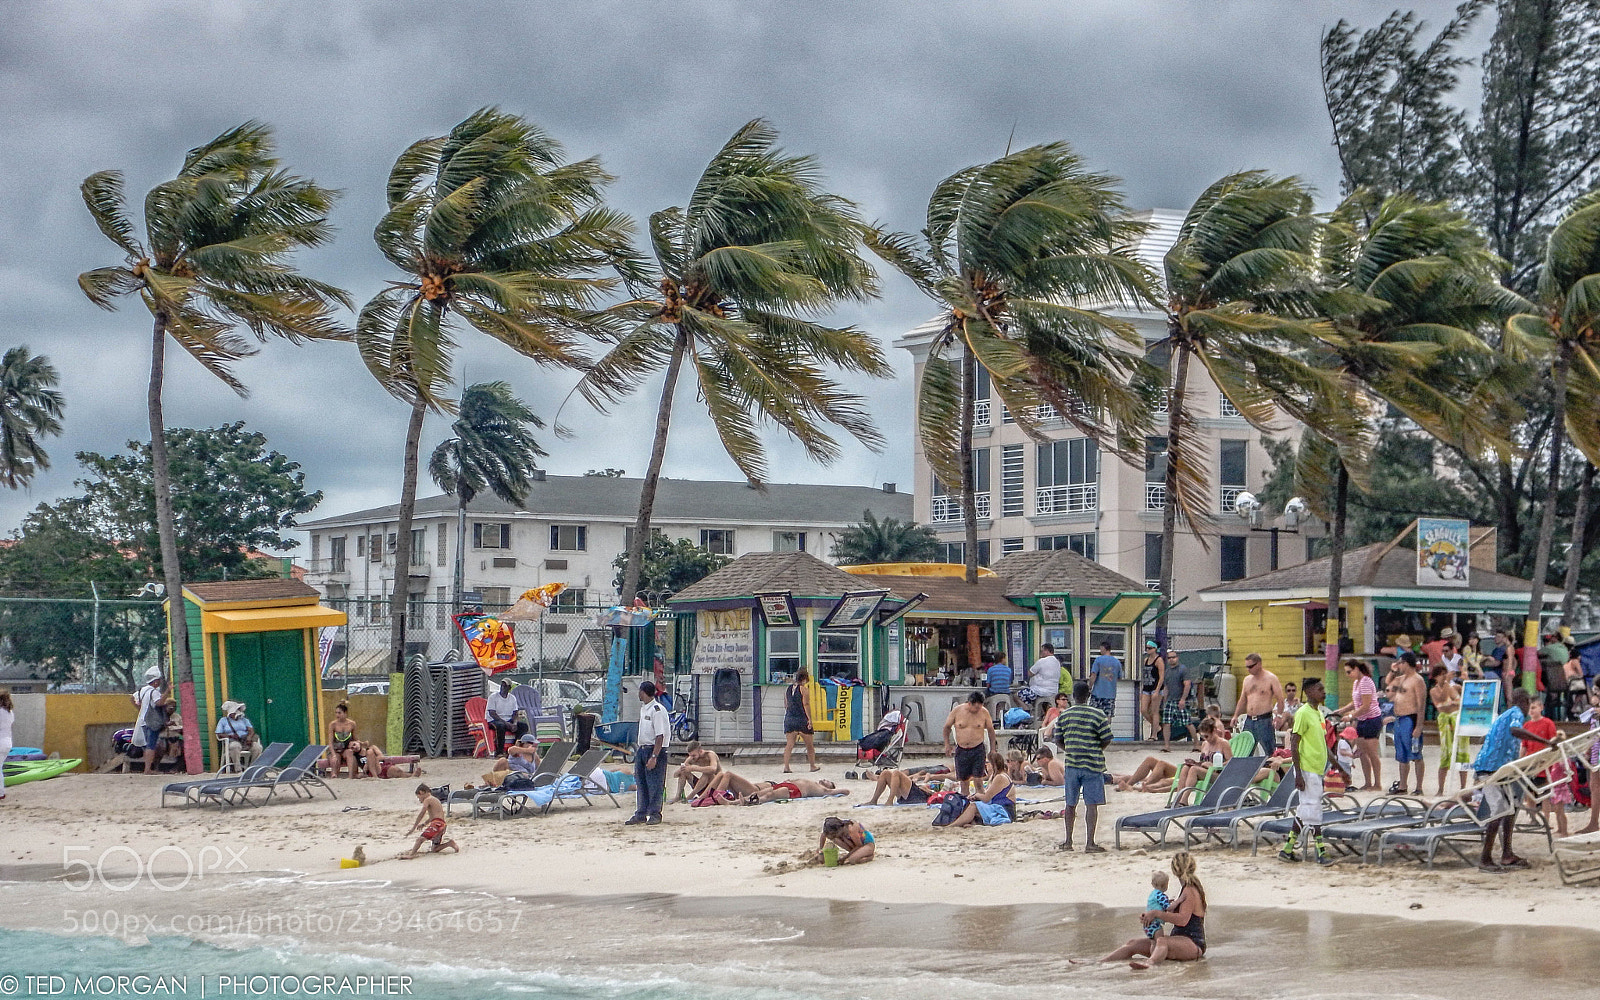 Nikon Coolpix AW120 sample photo. "Bahama breeze" photography